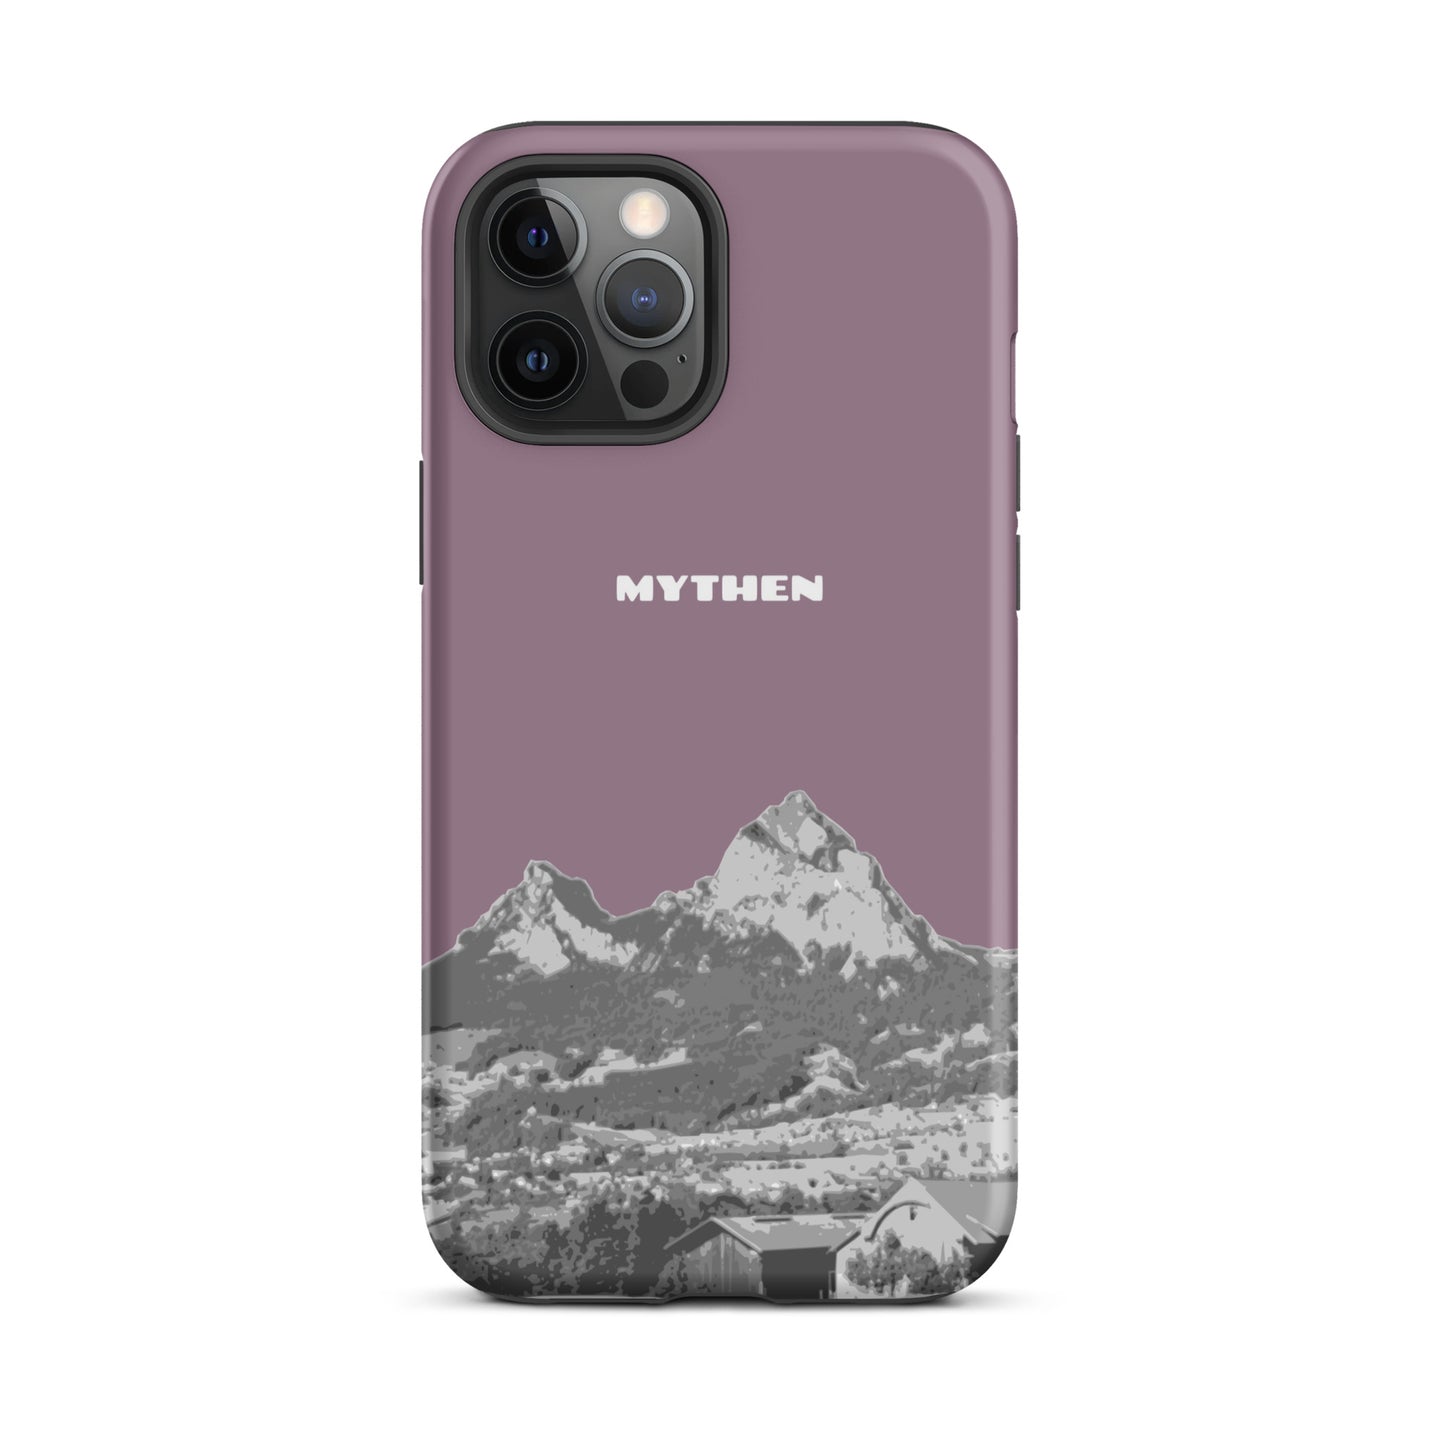 Hülle für das iPhone 12 Pro Max von Apple in der Farbe Pastellviolett, die den Grossen Mythen und den Kleinen Mythen bei Schwyz zeigt. 